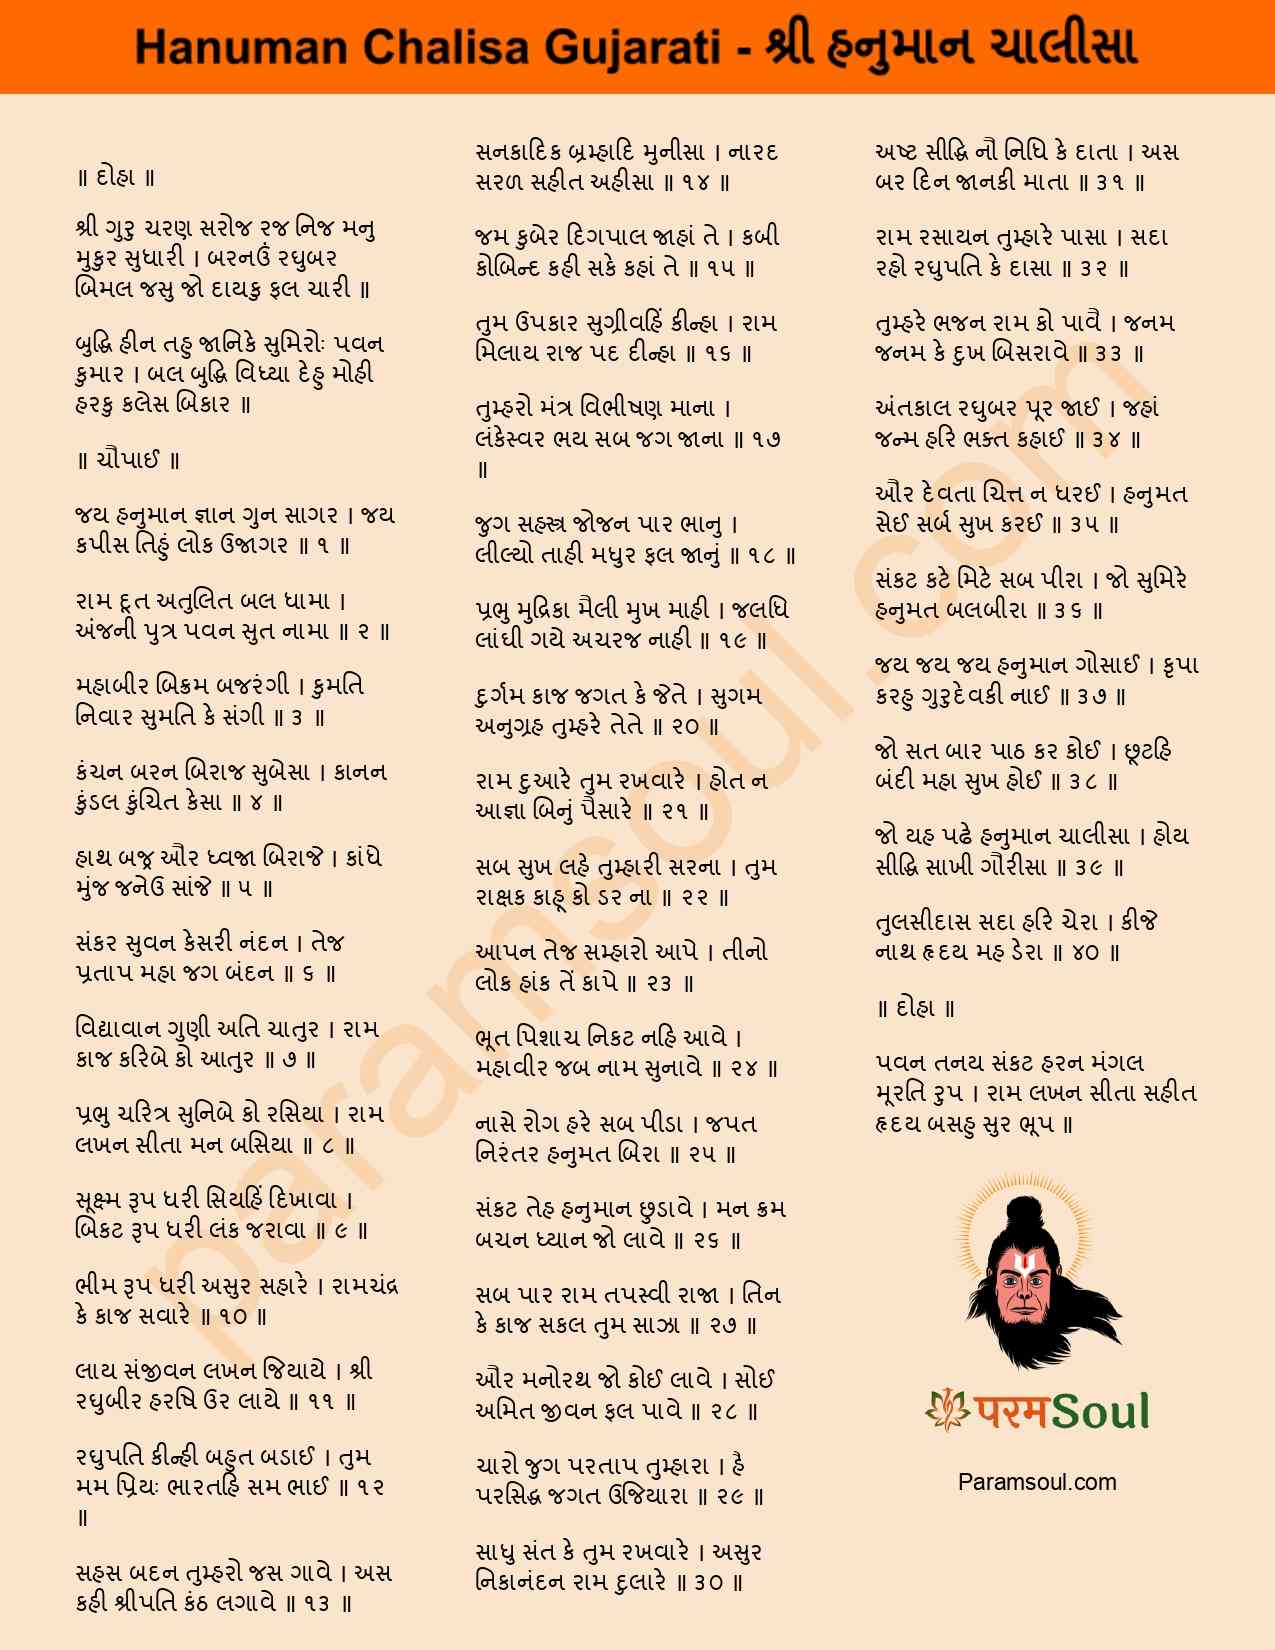 Hanuman Chalisa Gujarati Lyrics - શ્રી હનુમાન ચાલીસા ગીતો